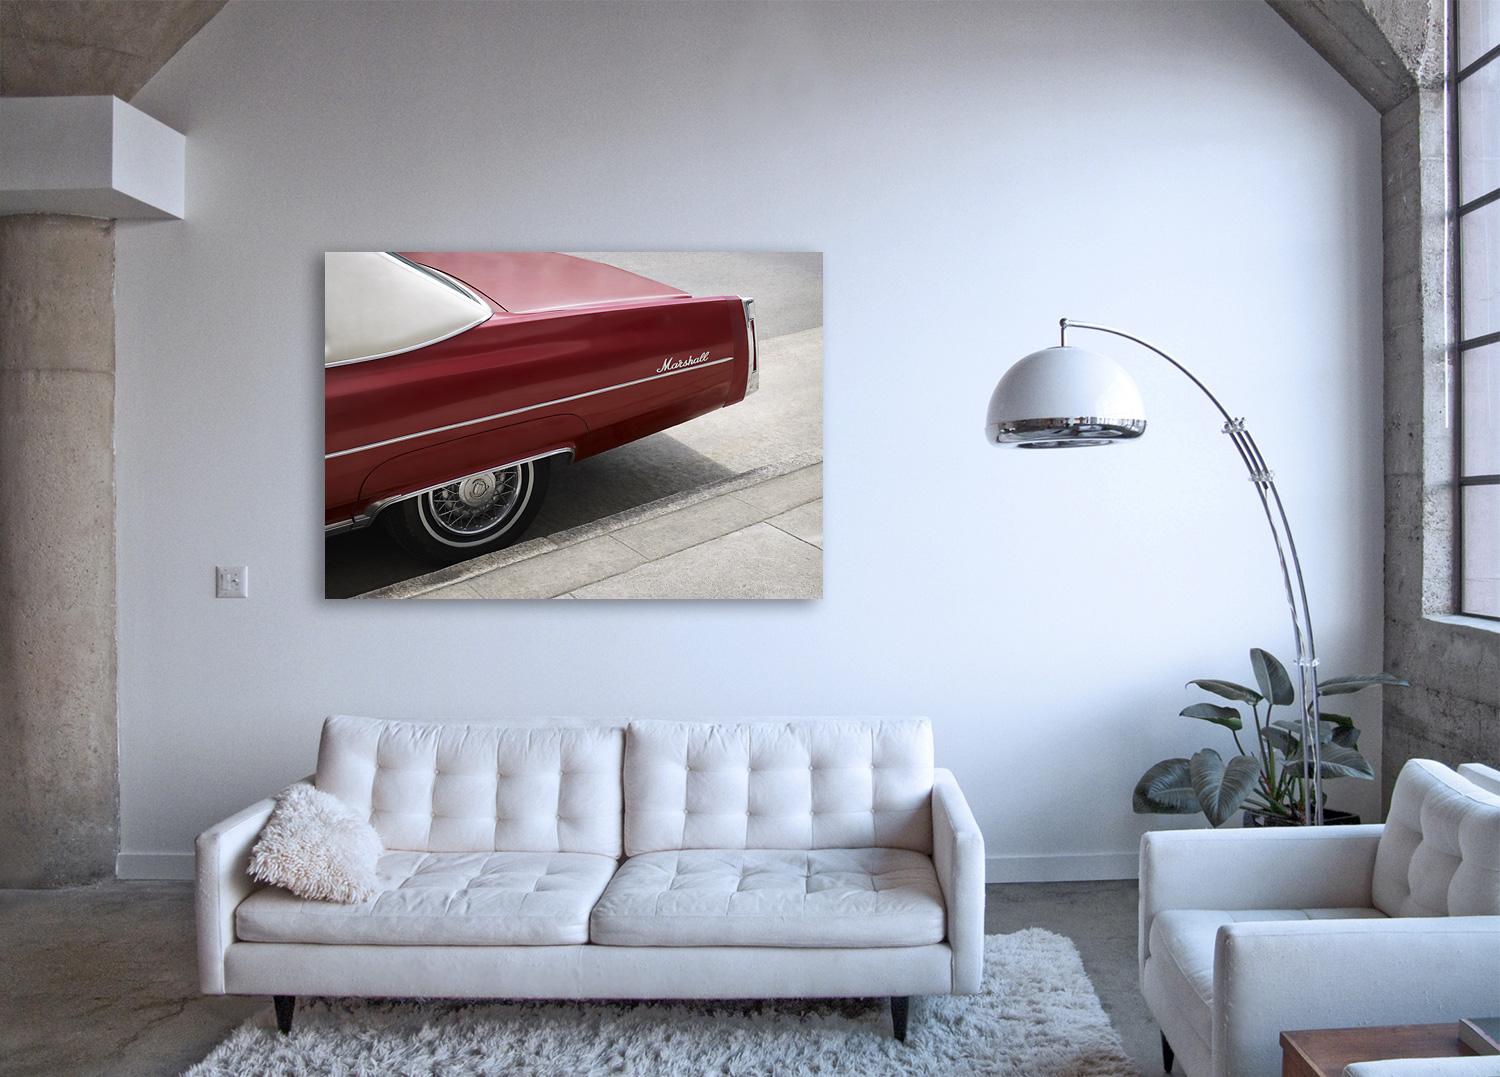 Marshall - Großformatiges Foto eines ikonischen Kirschroten Cadillac-Autos (Konzeptionell), Photograph, von Frank Schott